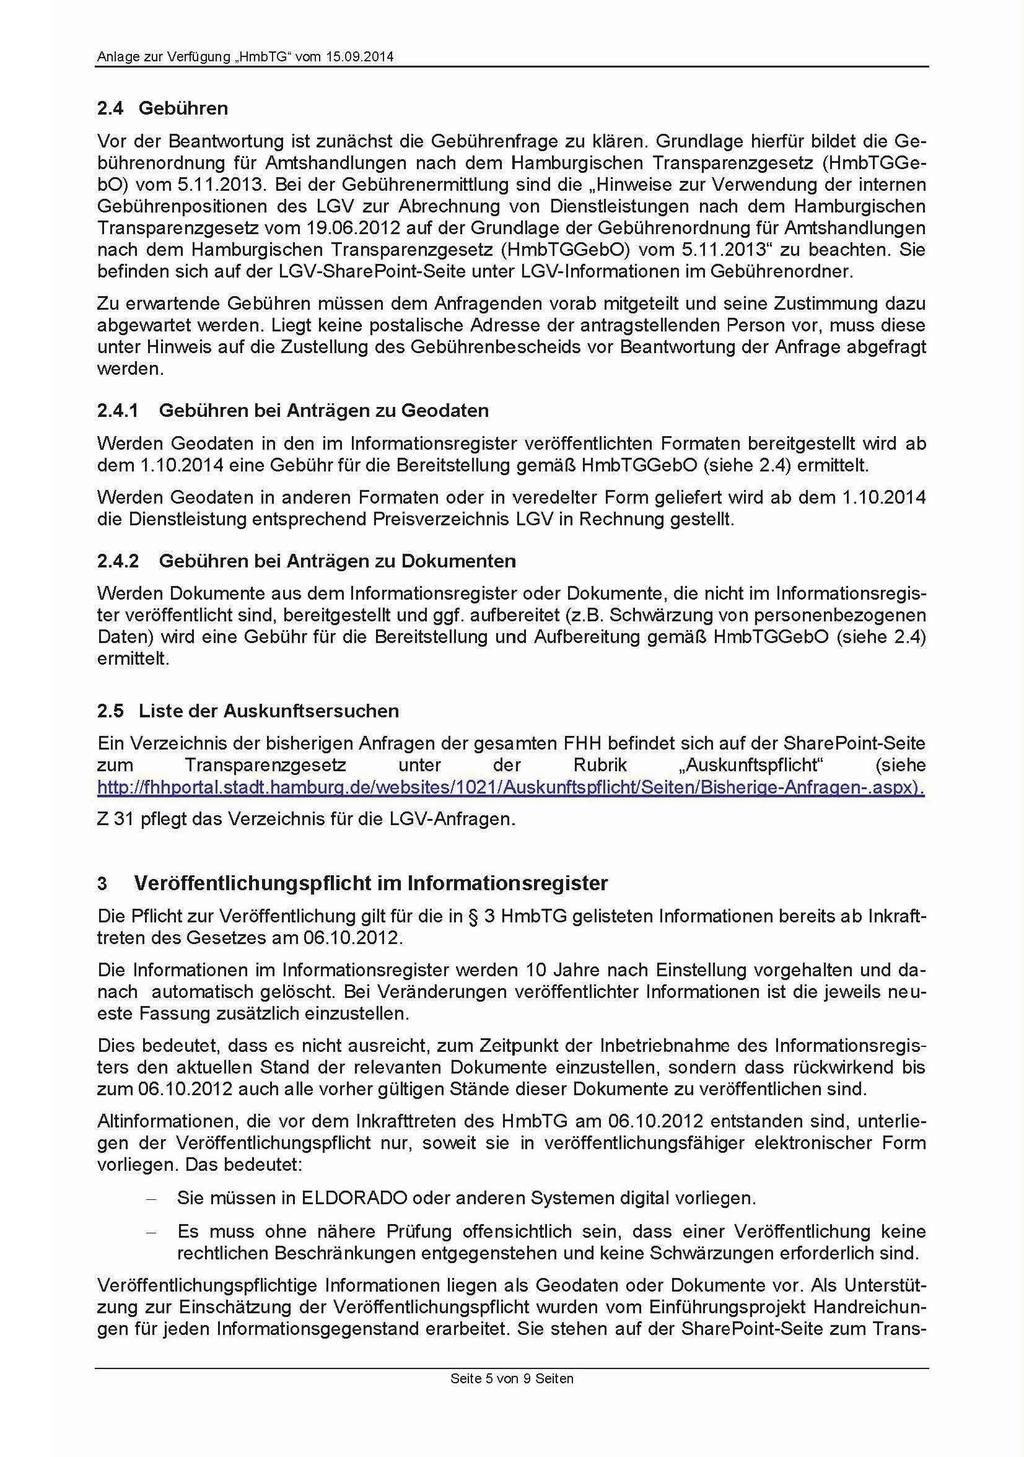 2.4 Gebühren Vor der Beantwortung ist zunächst die Gebührenfrage zu klären. Grundlage hierfür bildet die Gebührenordnung für Amtshandlungen nach dem Hamburgischen Transparenzgesetz (HmbTGGebO) vom 5.